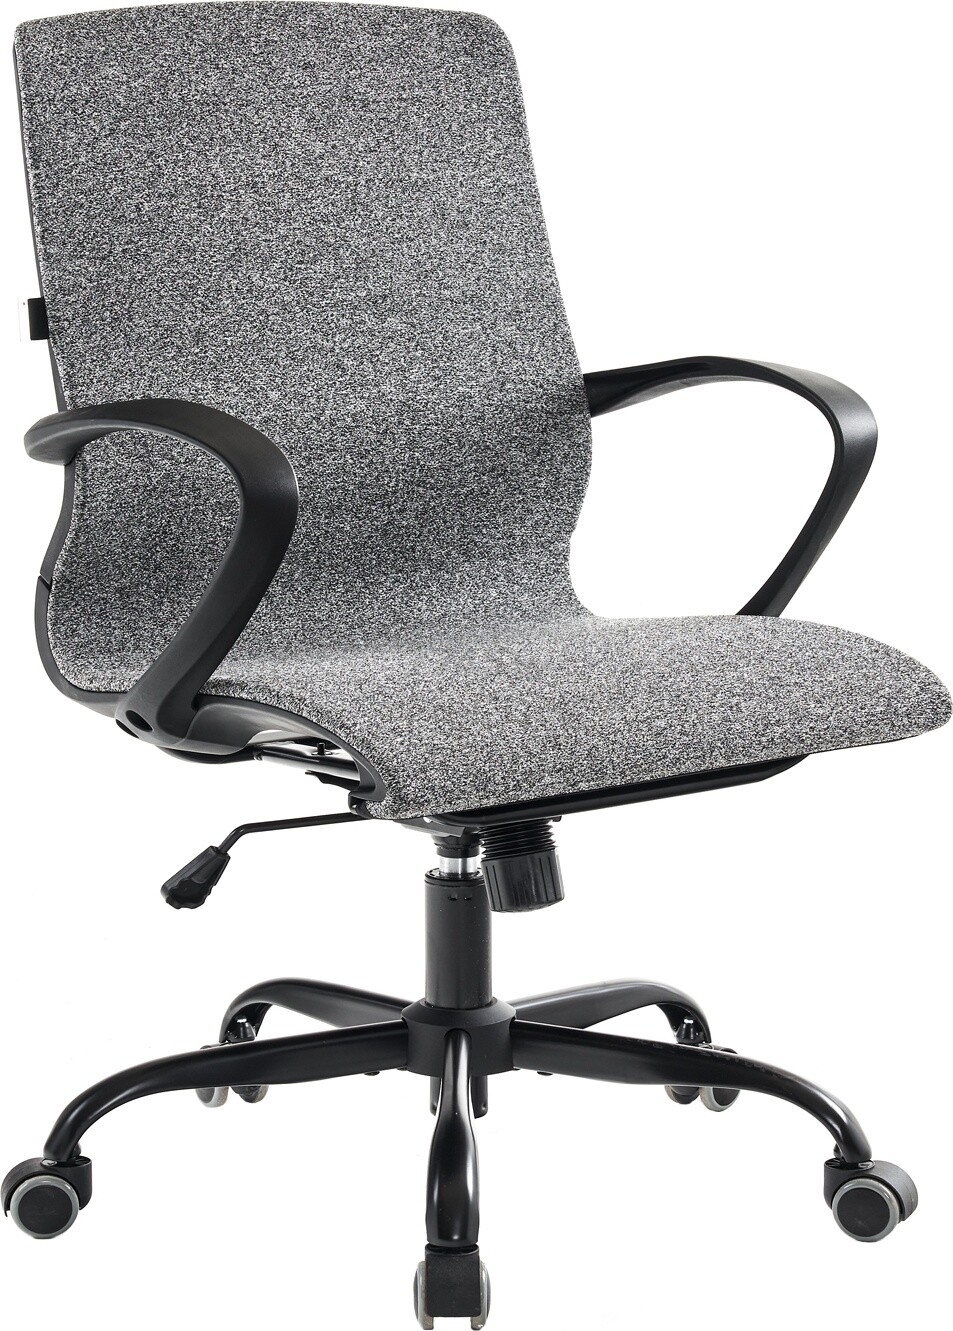 Кресло компьютерное EVERPROF Zero ткань темно-серый